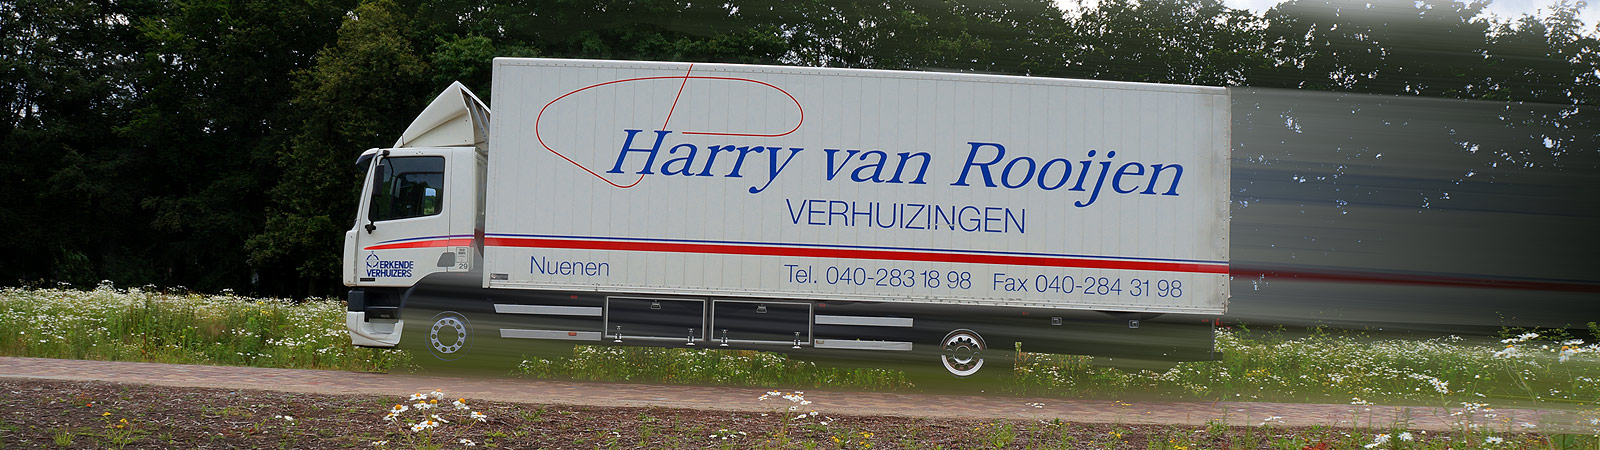 Harrie van Rooijen Verhuizingen